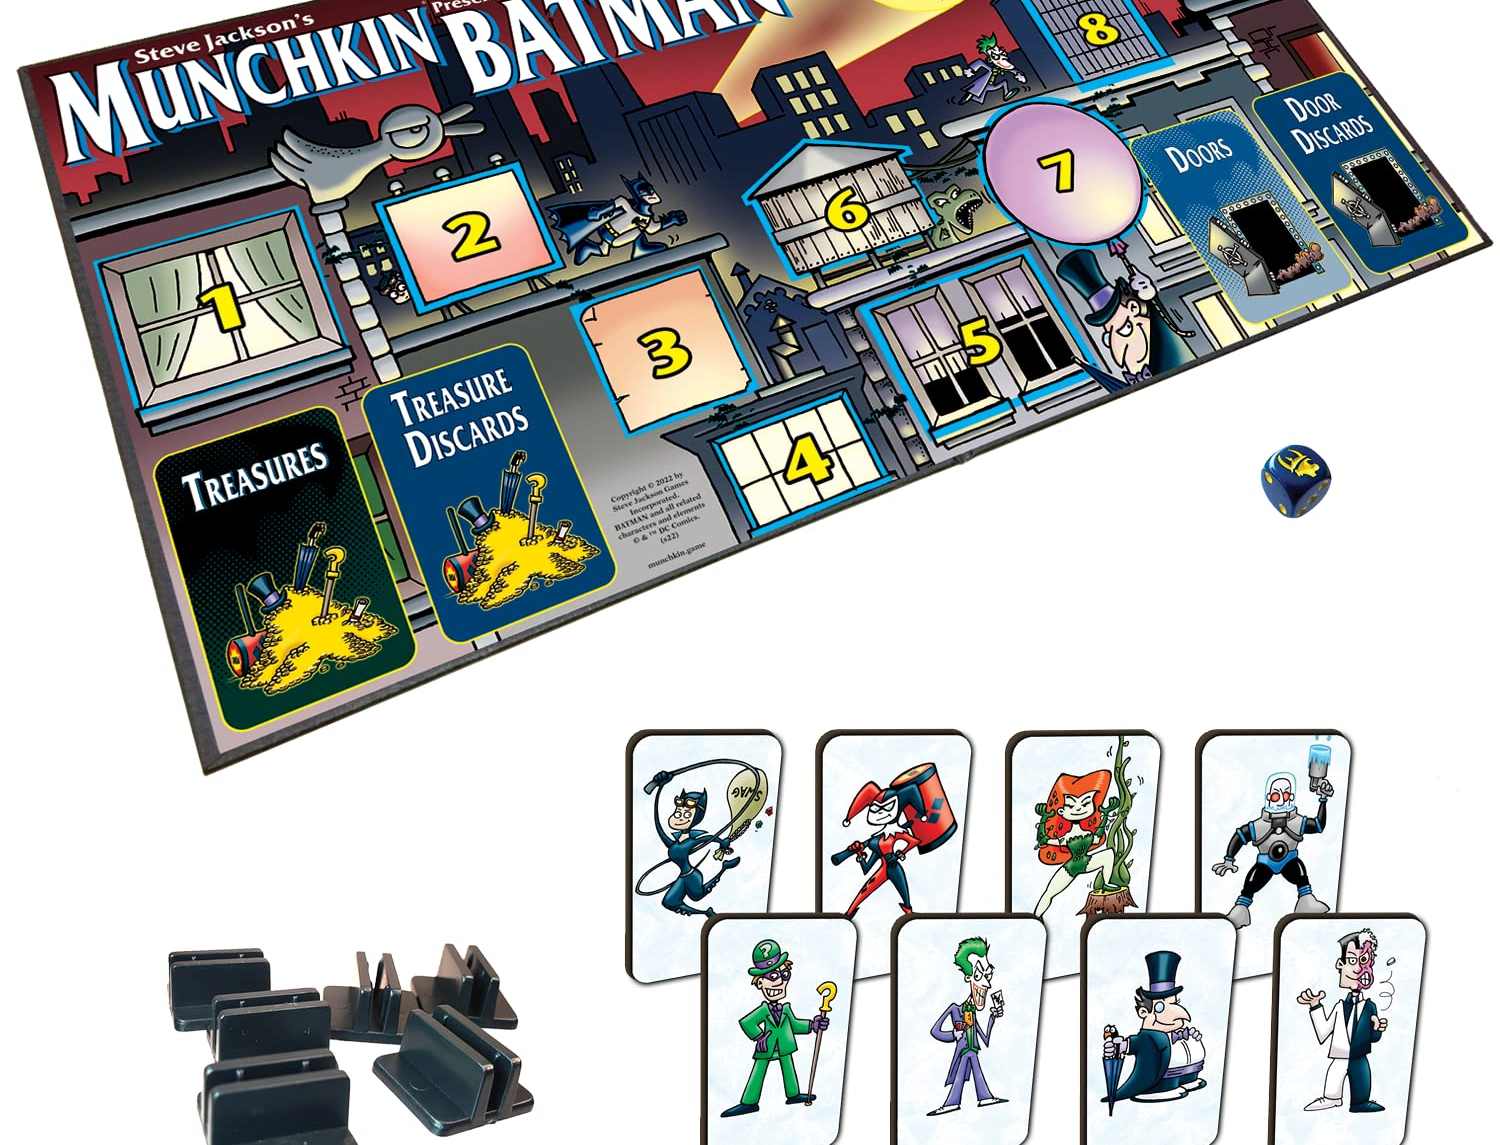 بازی رومیزی Steve Jackson's Munchkin Presents Batman 